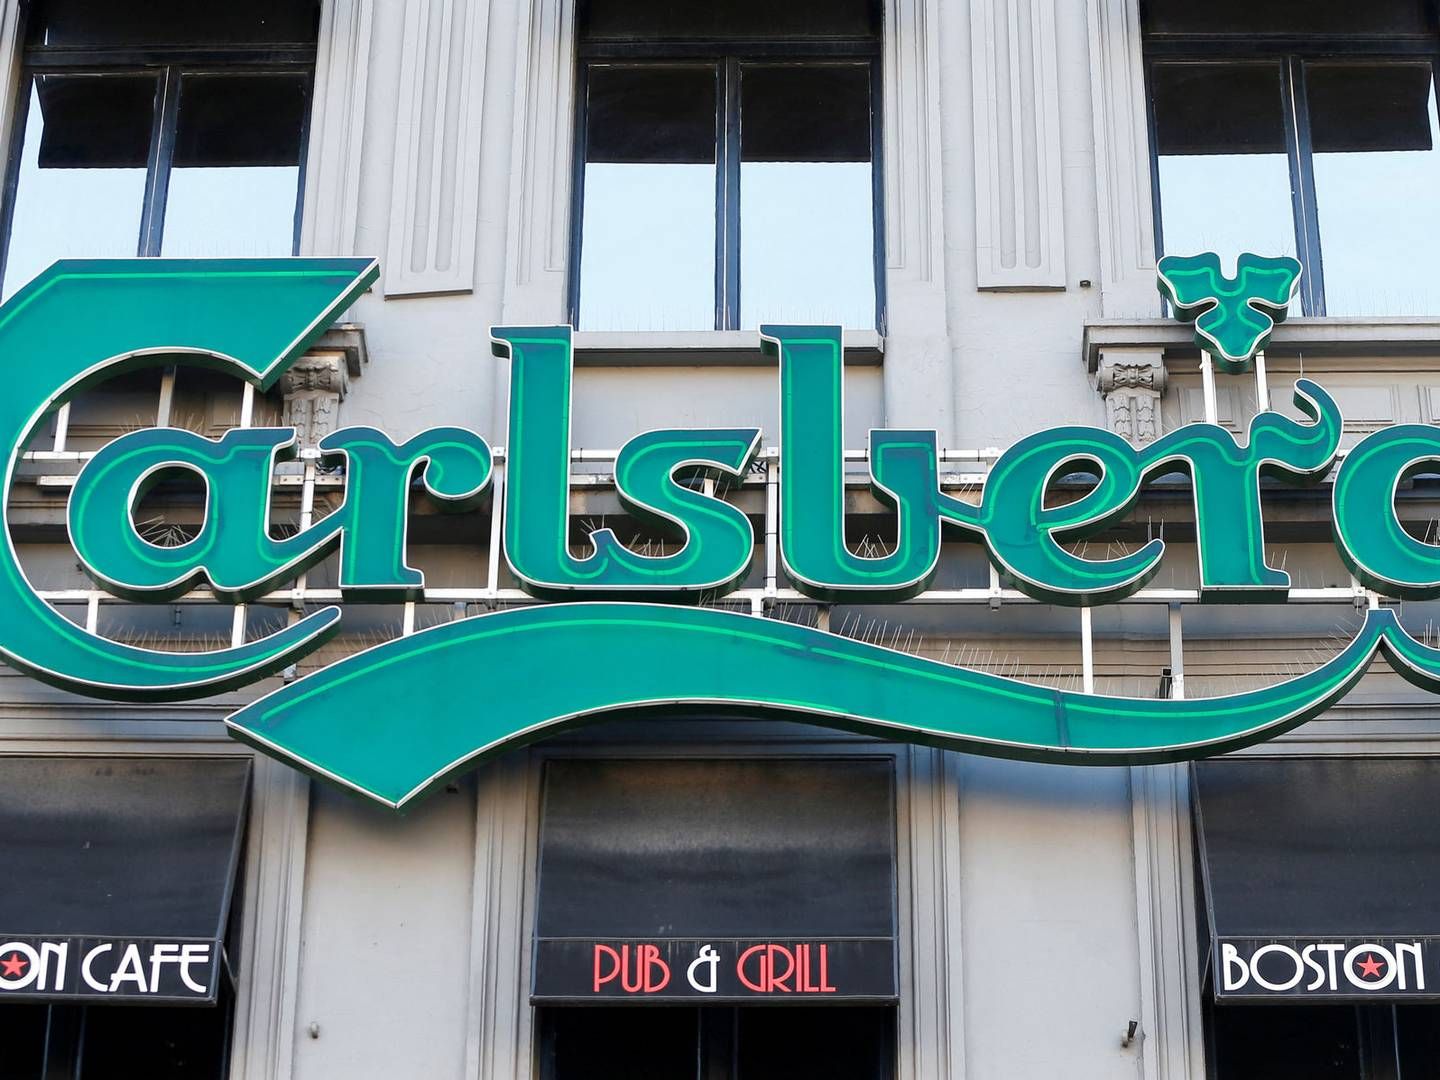 De russiske bryggerier sidder på omkring en fjerdedel af markedet i Rusland, og før krigen bidrog de med omkring 10 pct. af Carlsbergs omsætning.